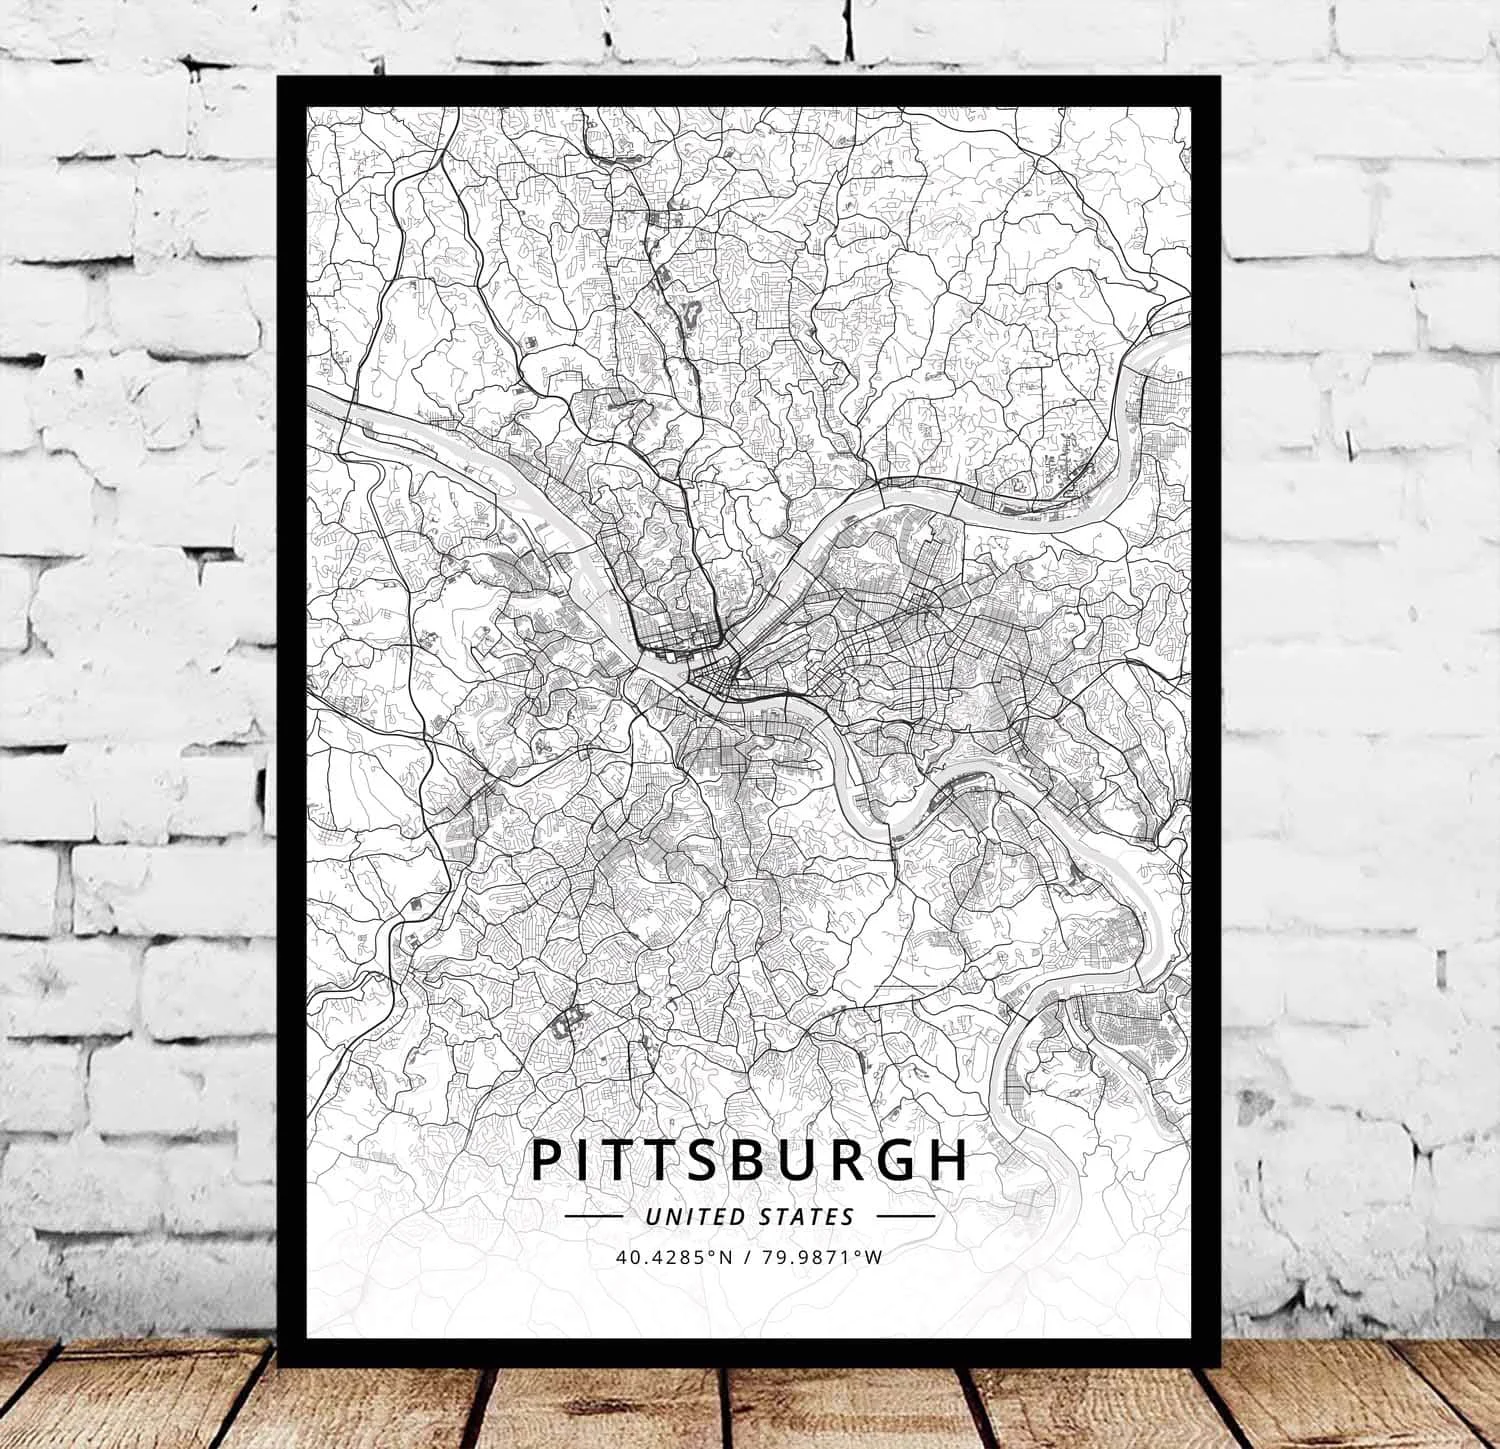 Постер с картой США Питтсбург ПА Пенсильвания | Дом и сад